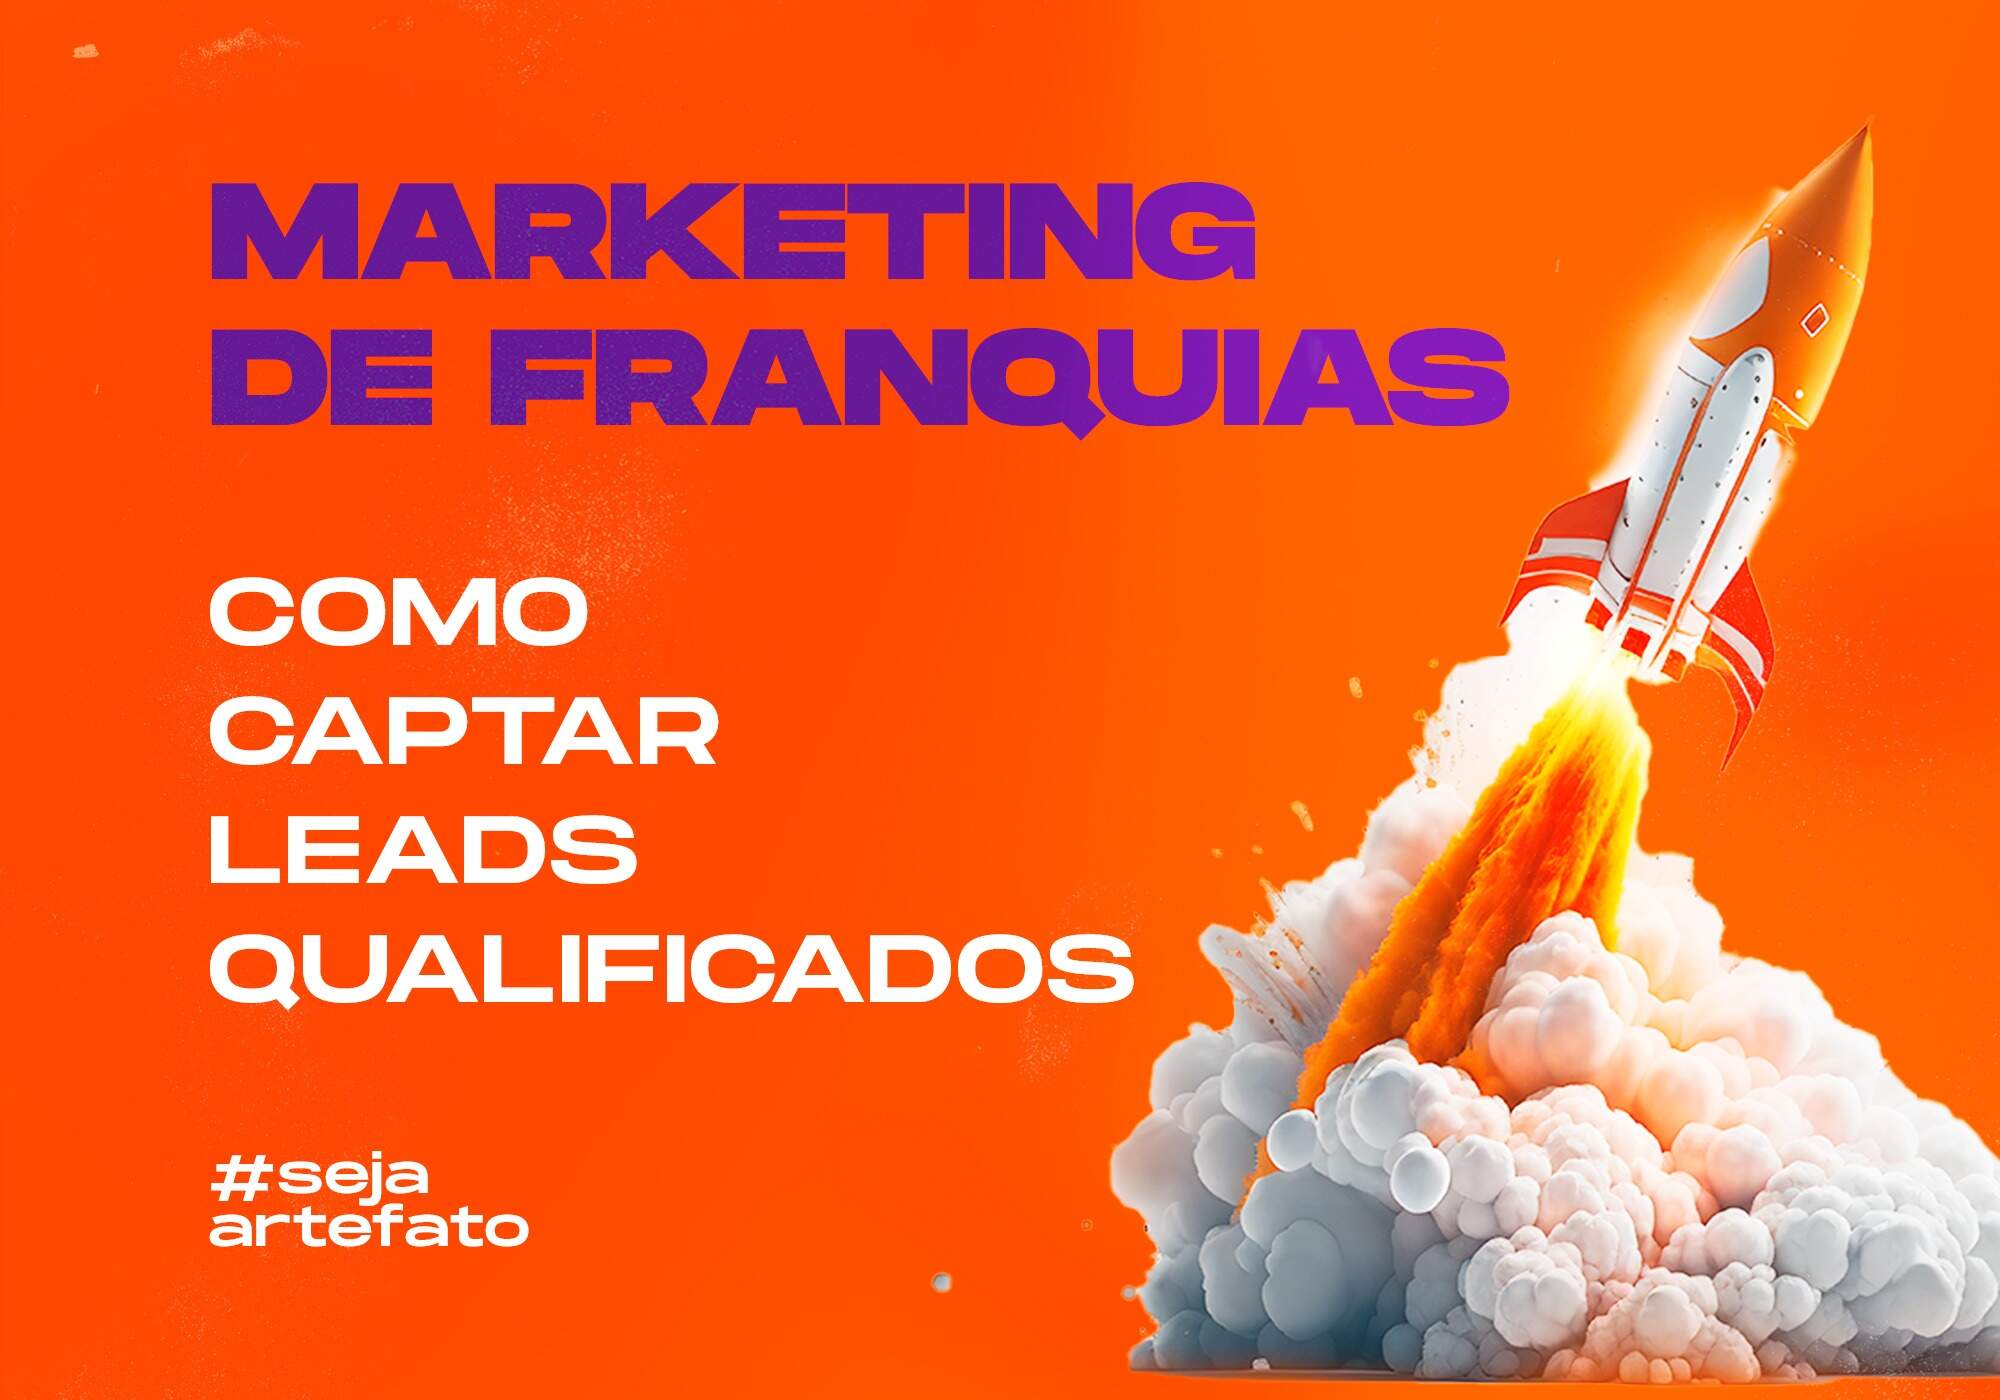 Marketing de Franquias: Como captar leads qualificados